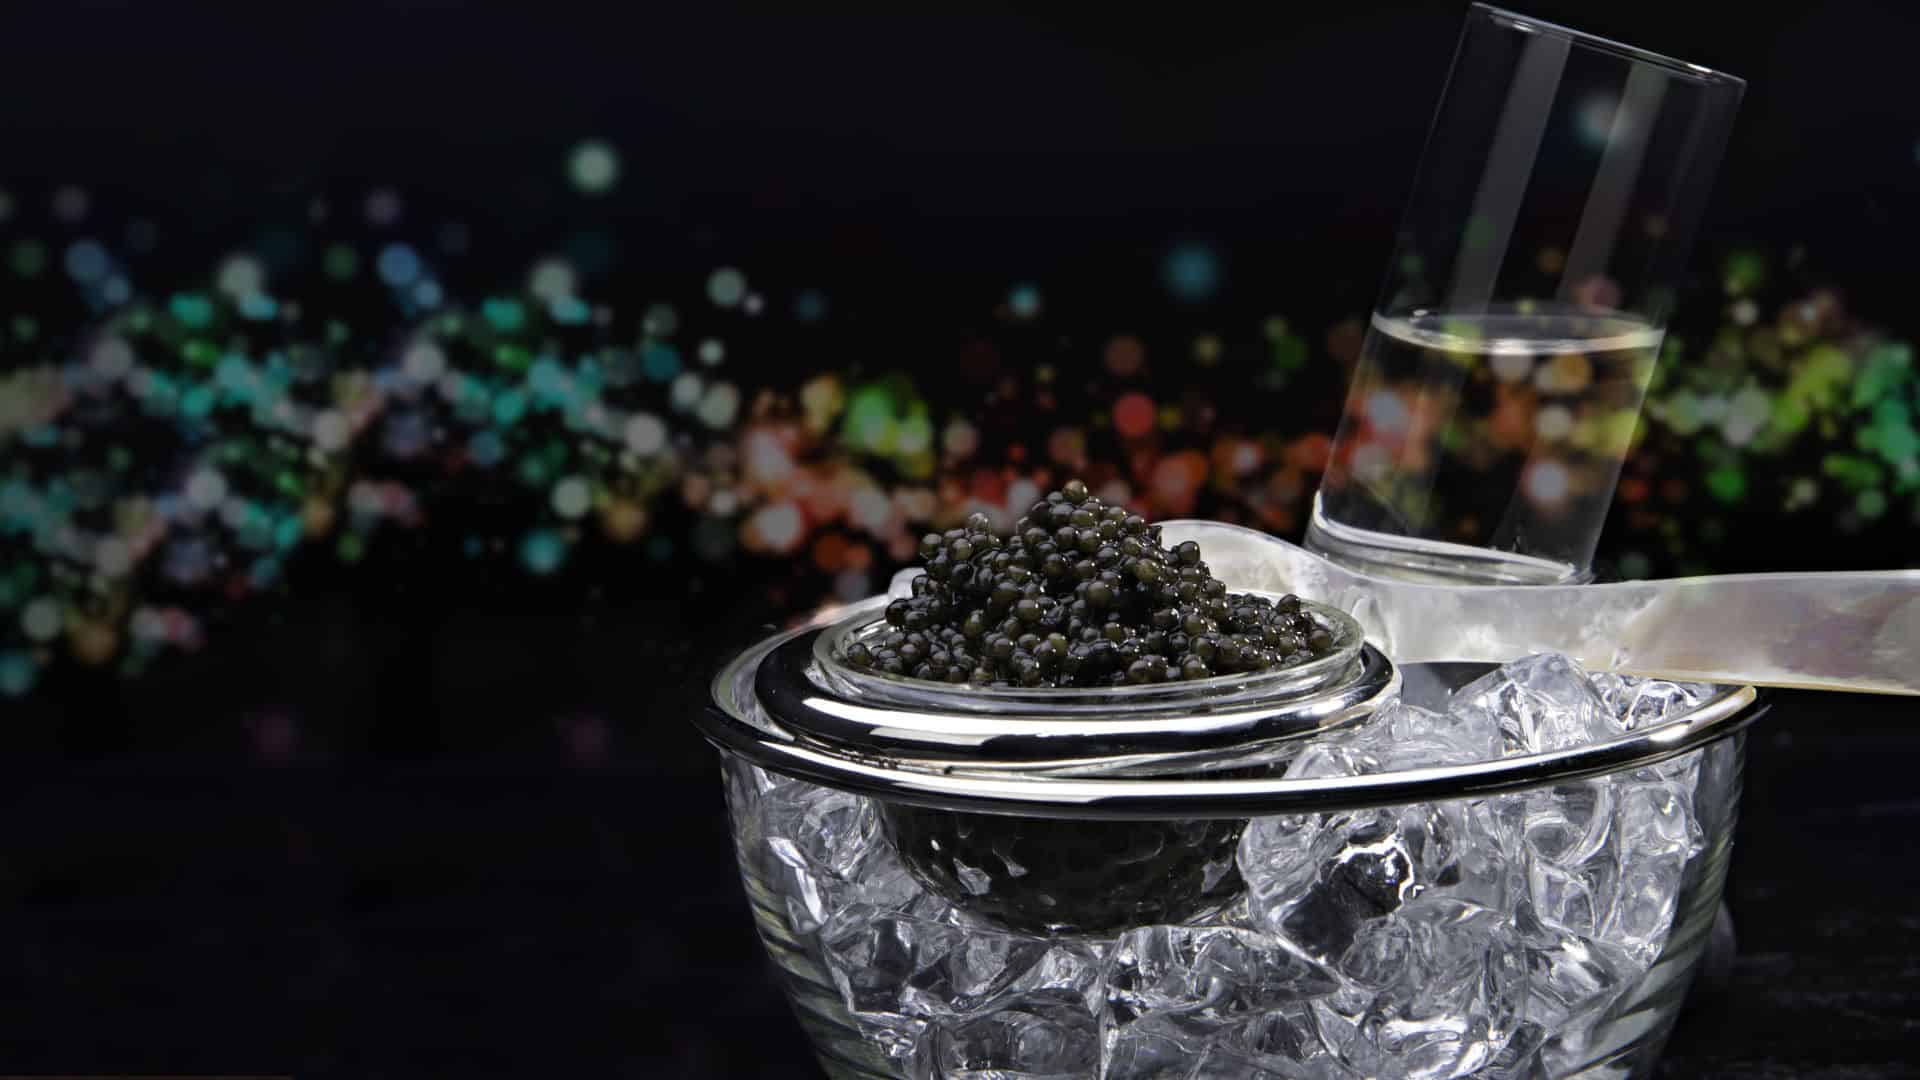 olma caviar gift